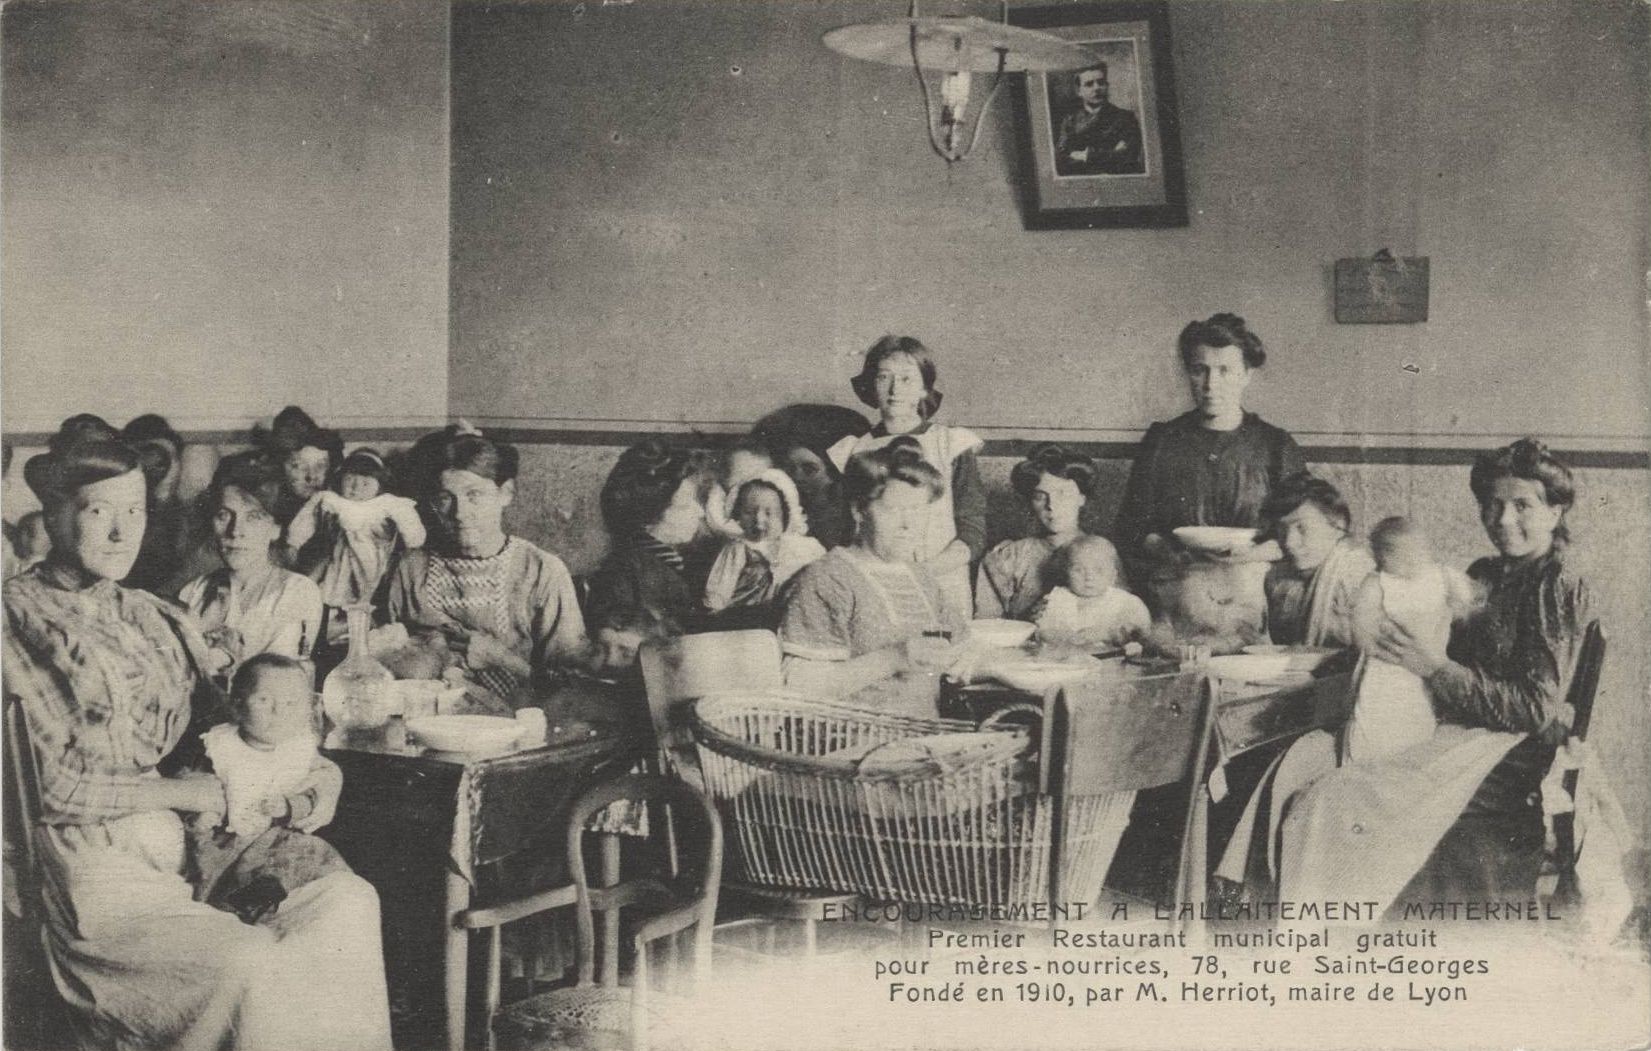 Encouragement à l'allaitement maternel - Premier restaurant municipal gratuit pour les mères-nourrices : carte postale NB (1910, cote : 4FI/3733)